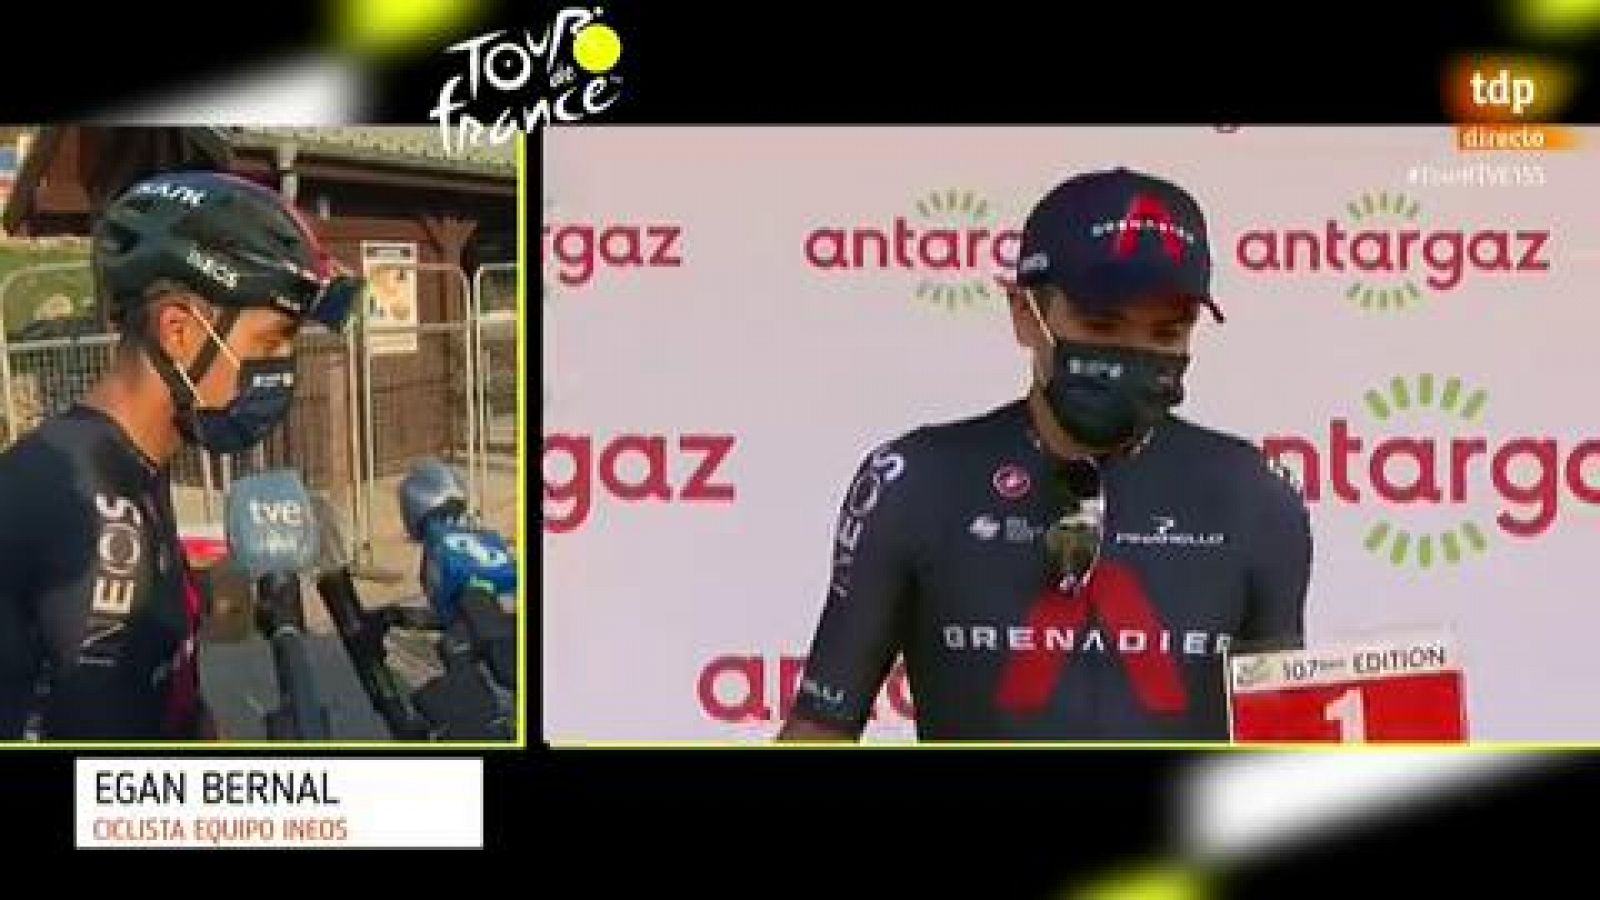 Etapa 16 del Tour de Francia | Egan Bernal: "He estado todo el día sufriendo dolores de espalda"